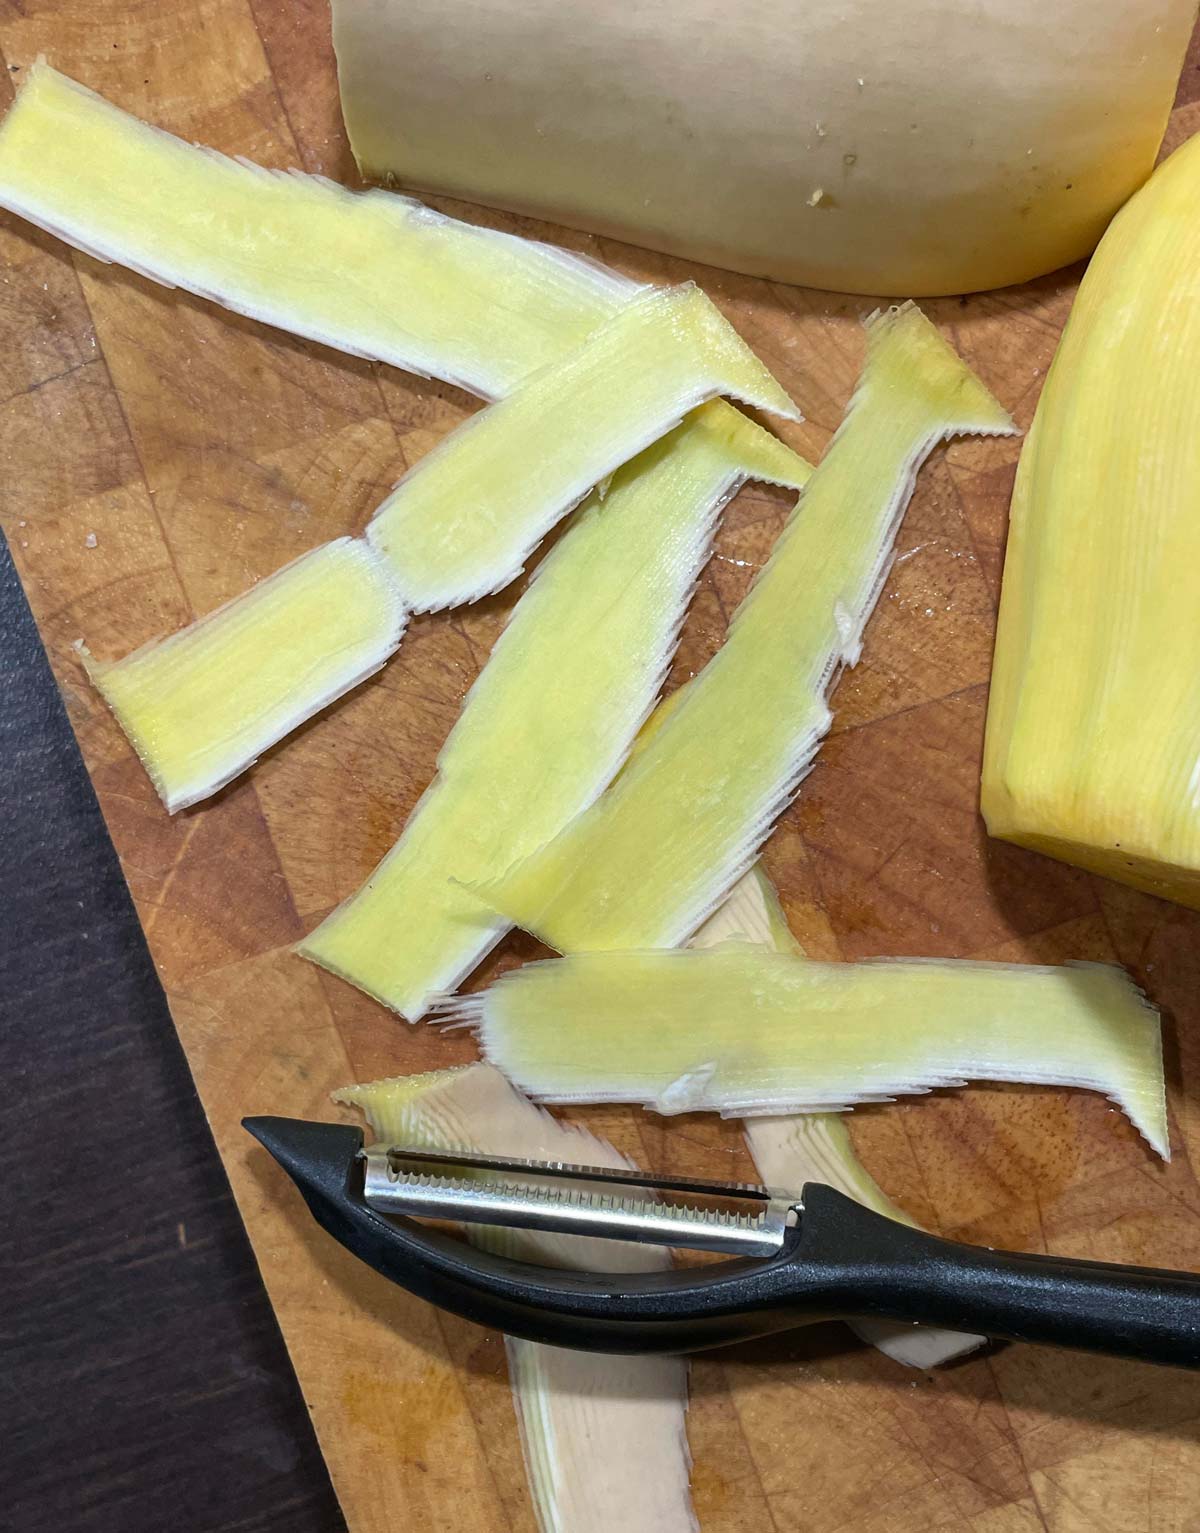 Pumpkin peels look like low-resolution images